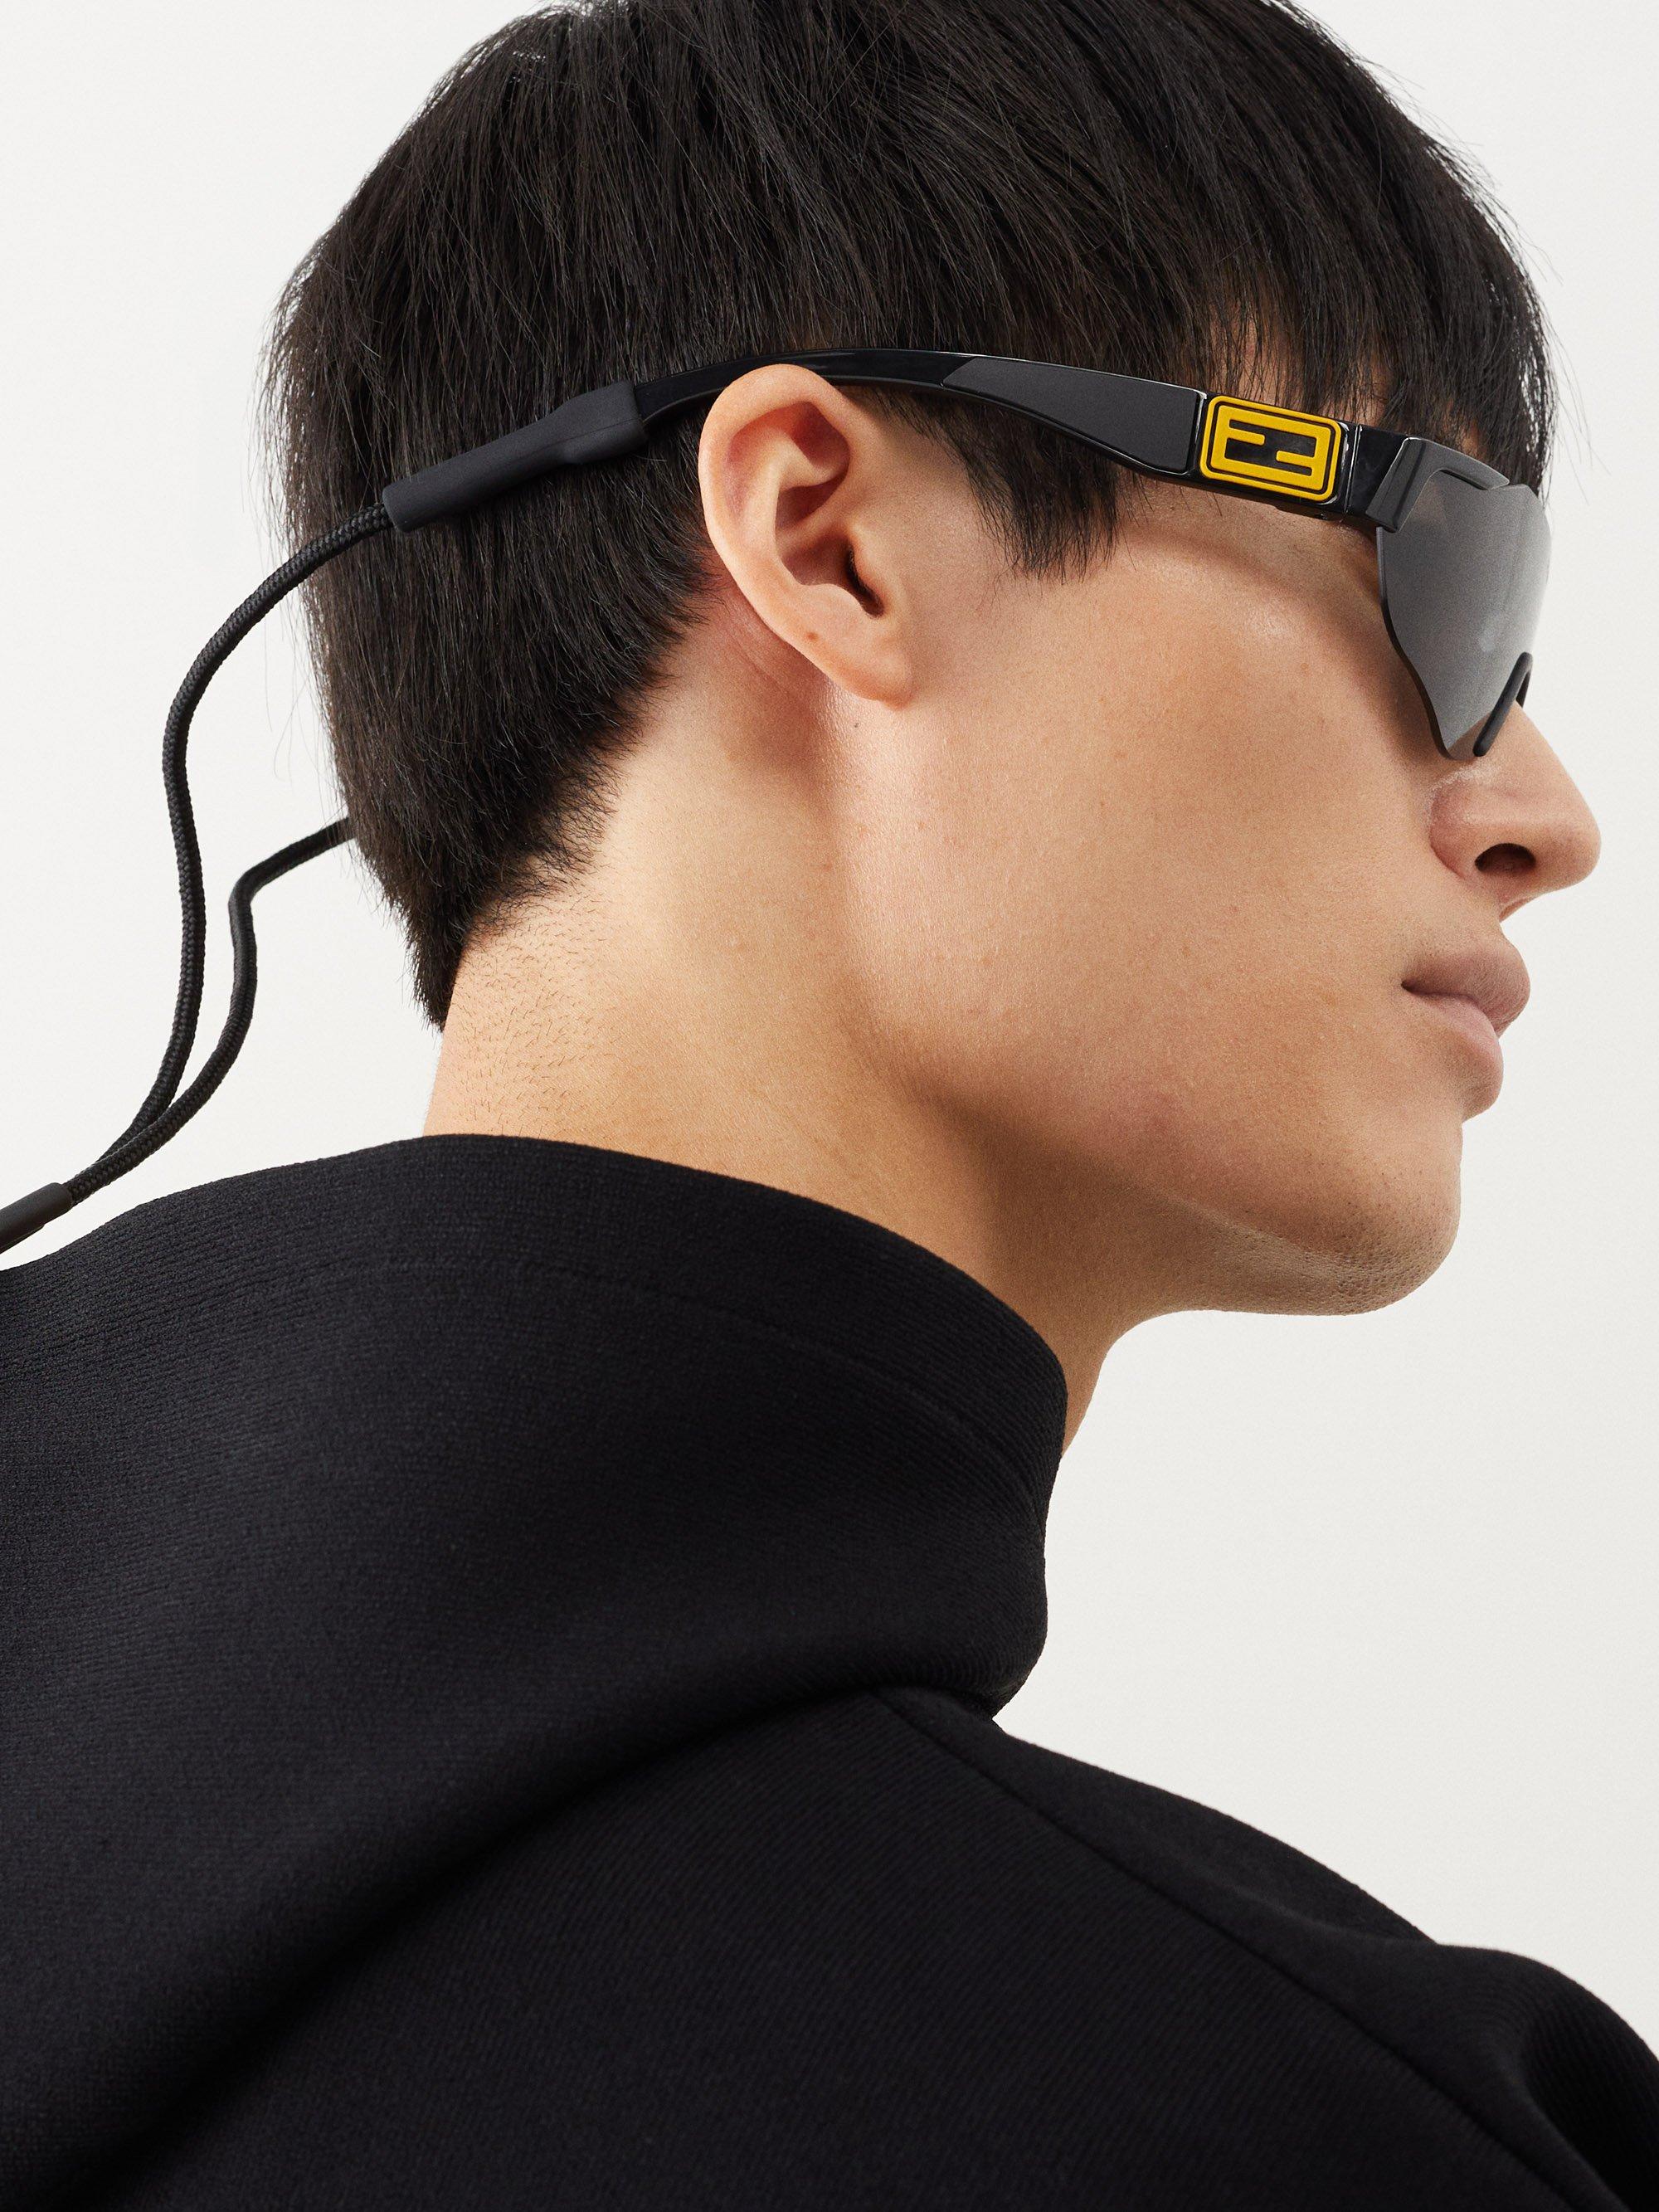 Fendi Sport Baguette Mask-frame Acetate Sunglasses in Gray for Men